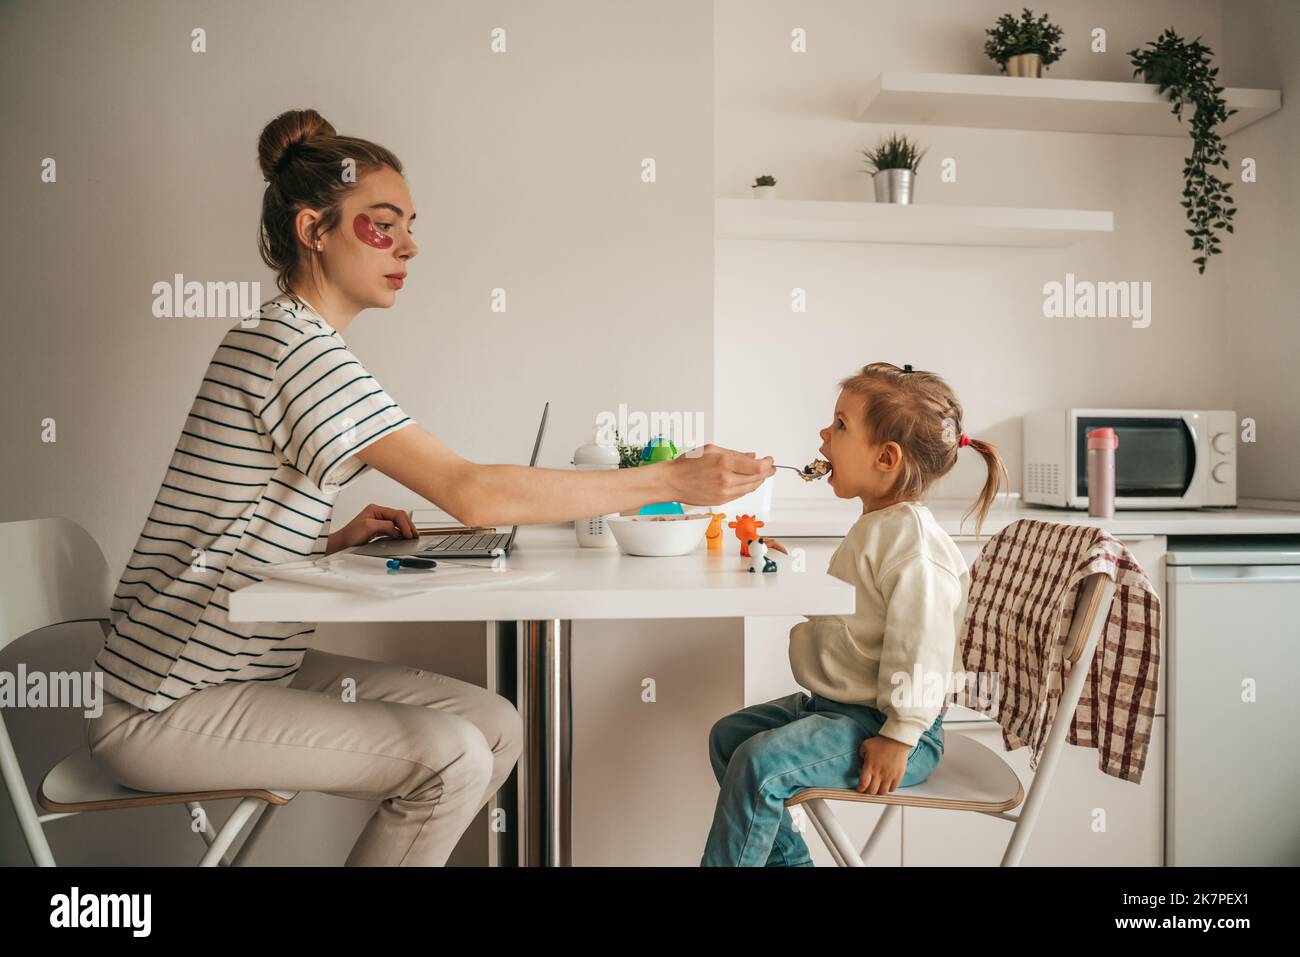 Frau mit Unteraugenflecken sitzt vor dem Laptop und gibt dem Mädchen am Küchentisch einen Löffel Haferbrei Stockfoto